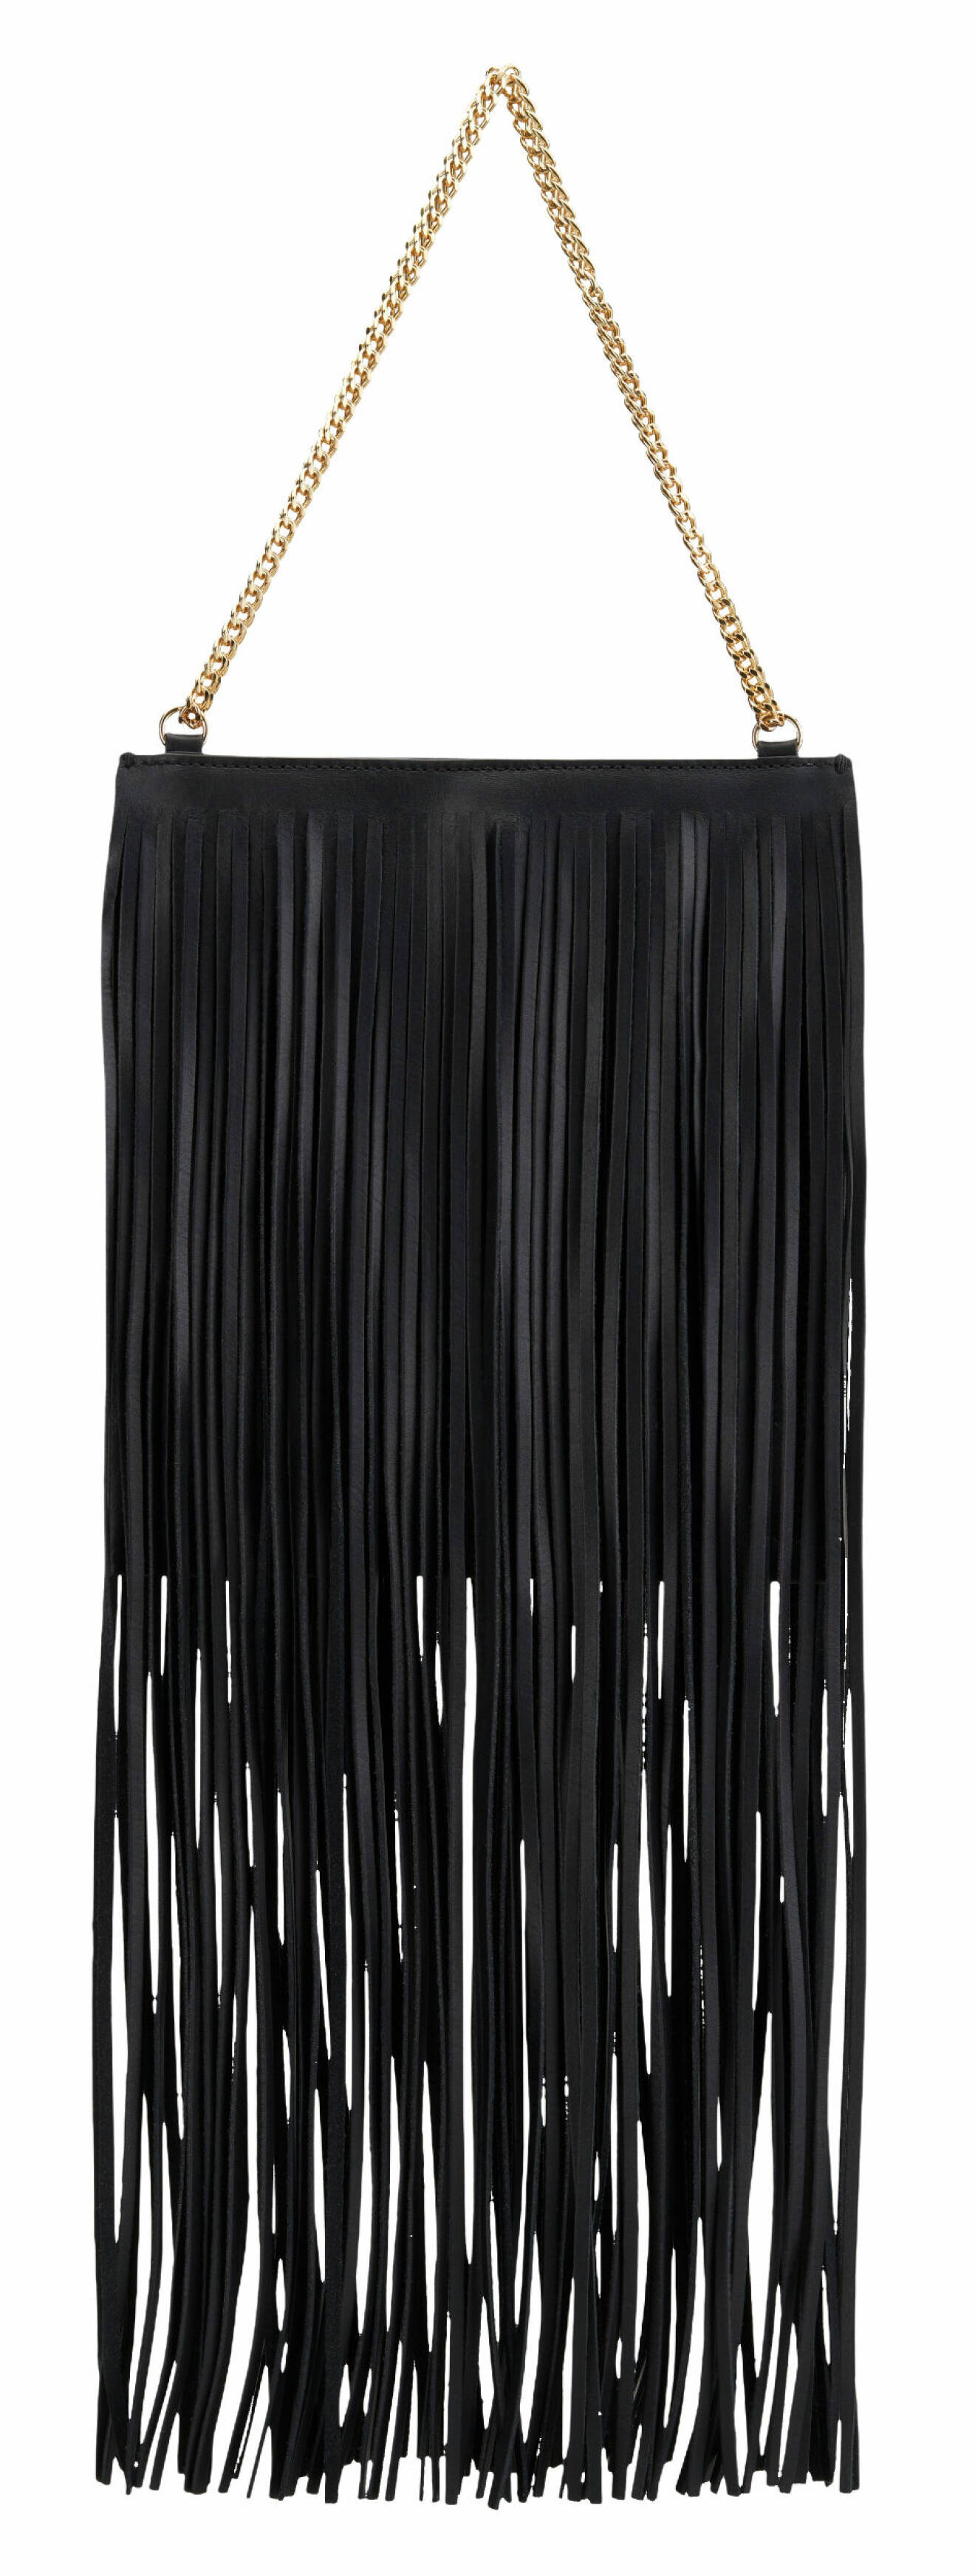 Trendig väska i svart med långa fransar, från Atp Atelier.